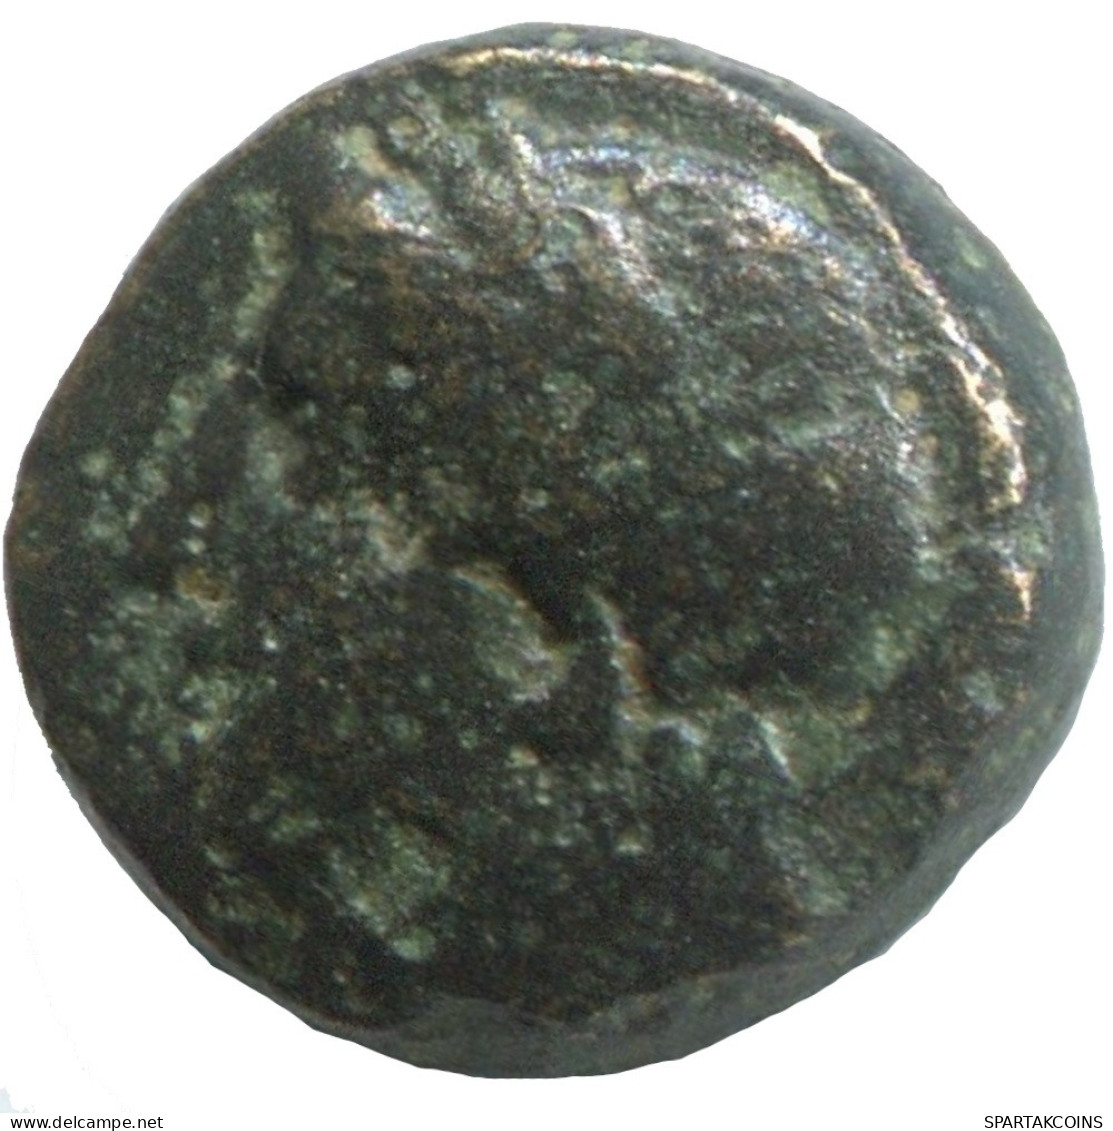 Ancient Antike Authentische Original GRIECHISCHE Münze 1.3g/10mm #SAV1319.11.D.A - Griechische Münzen